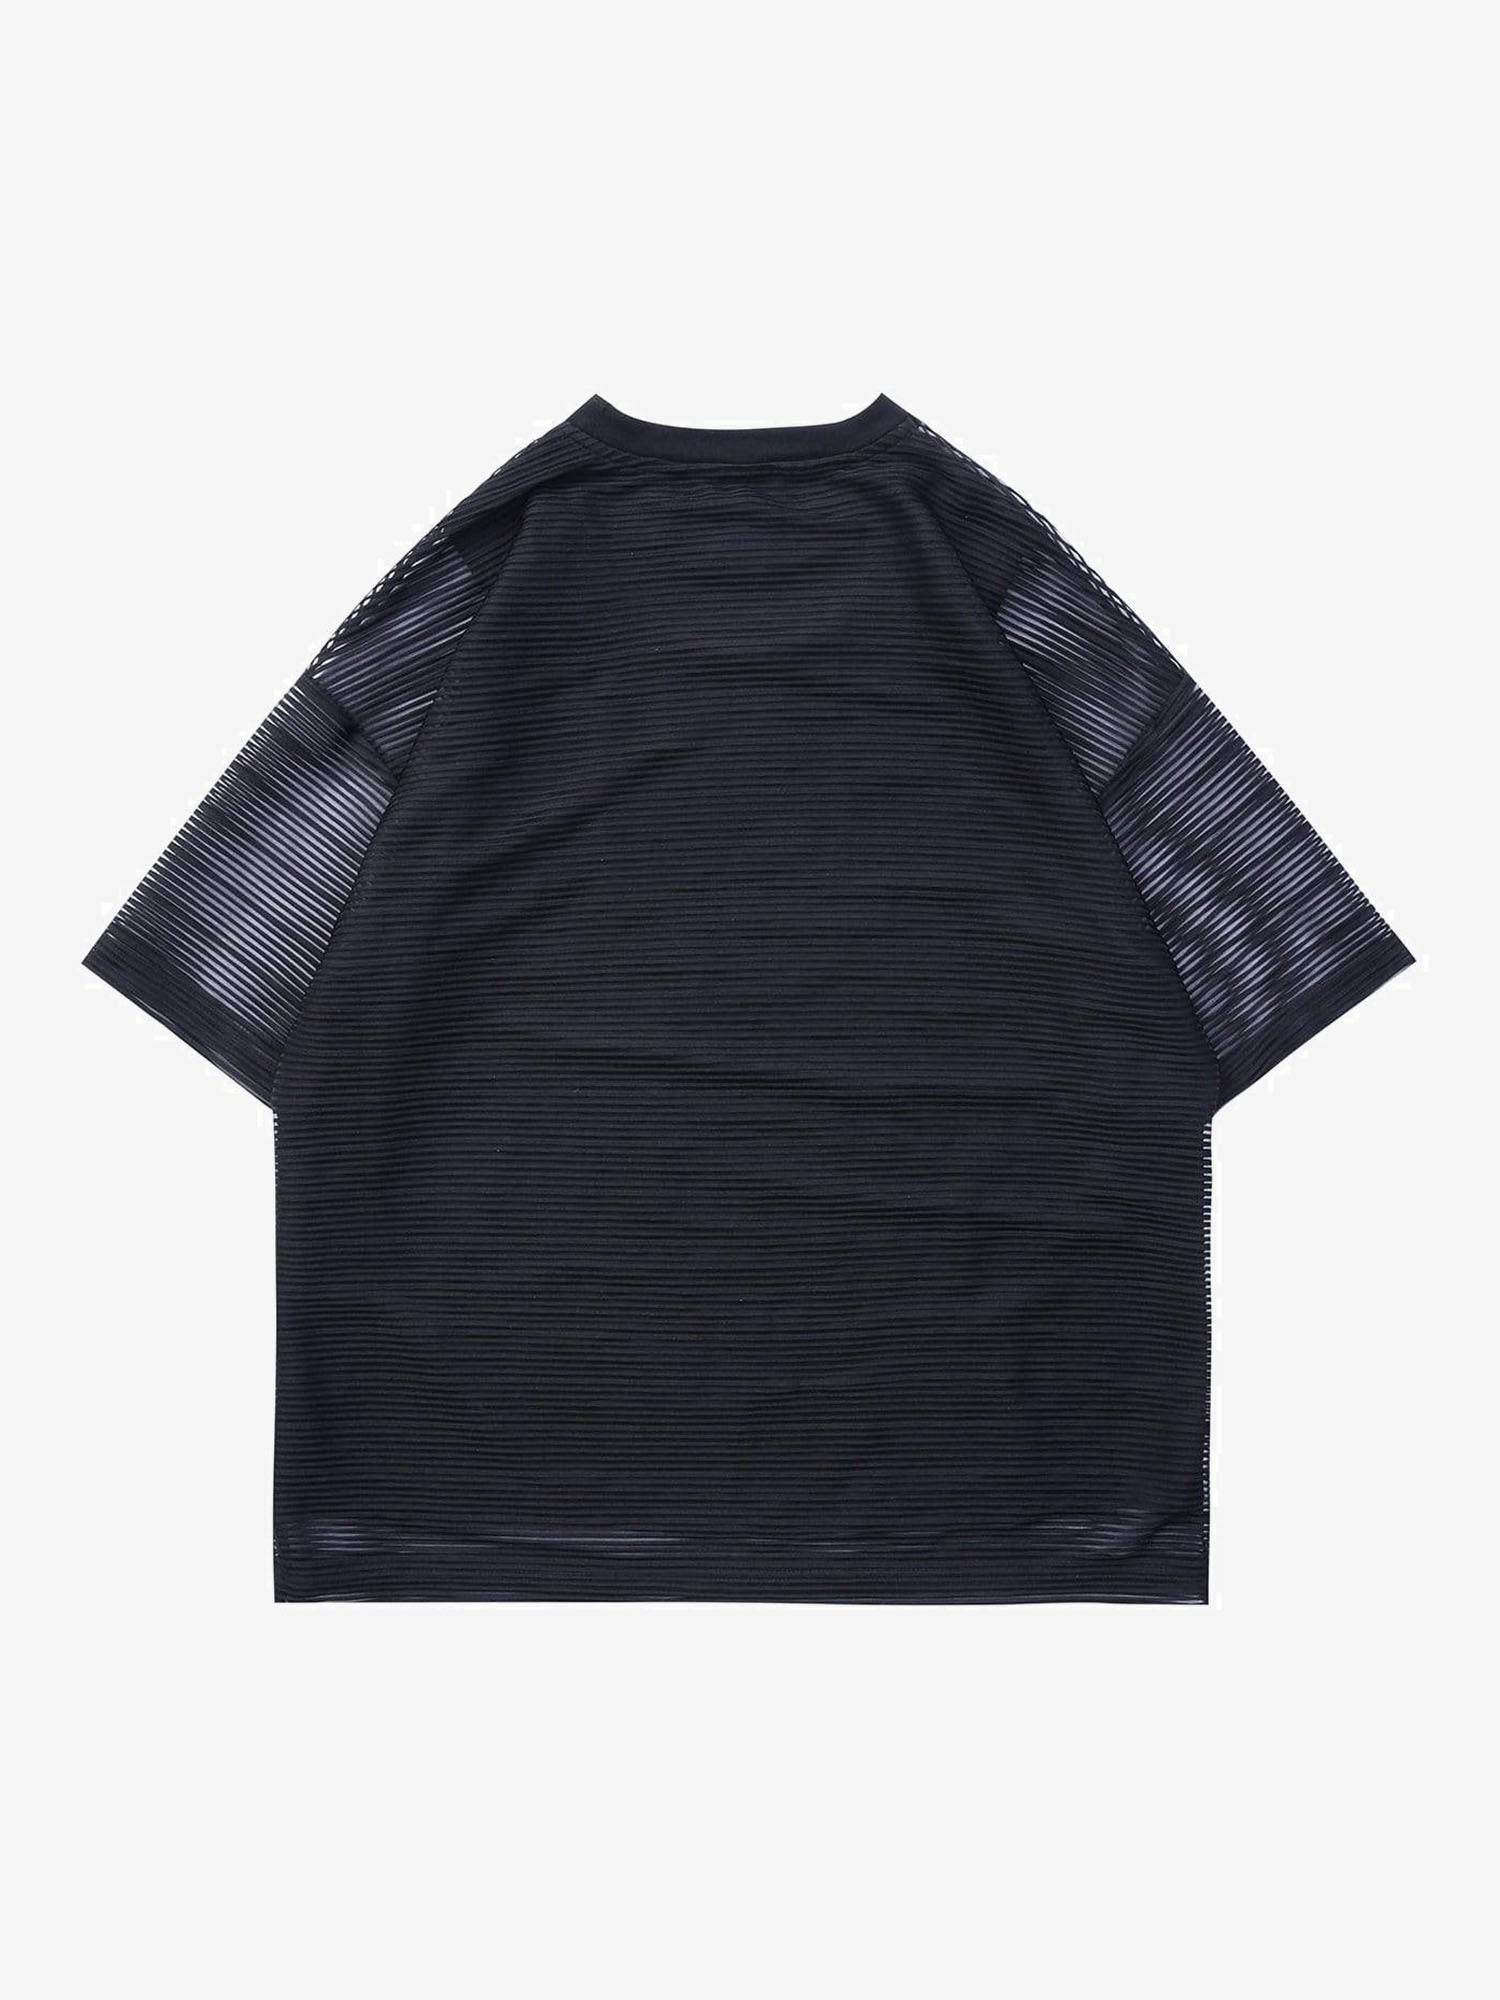 Justnotag Skeleton Net Patchwork T-shirt à manches courtes en coton